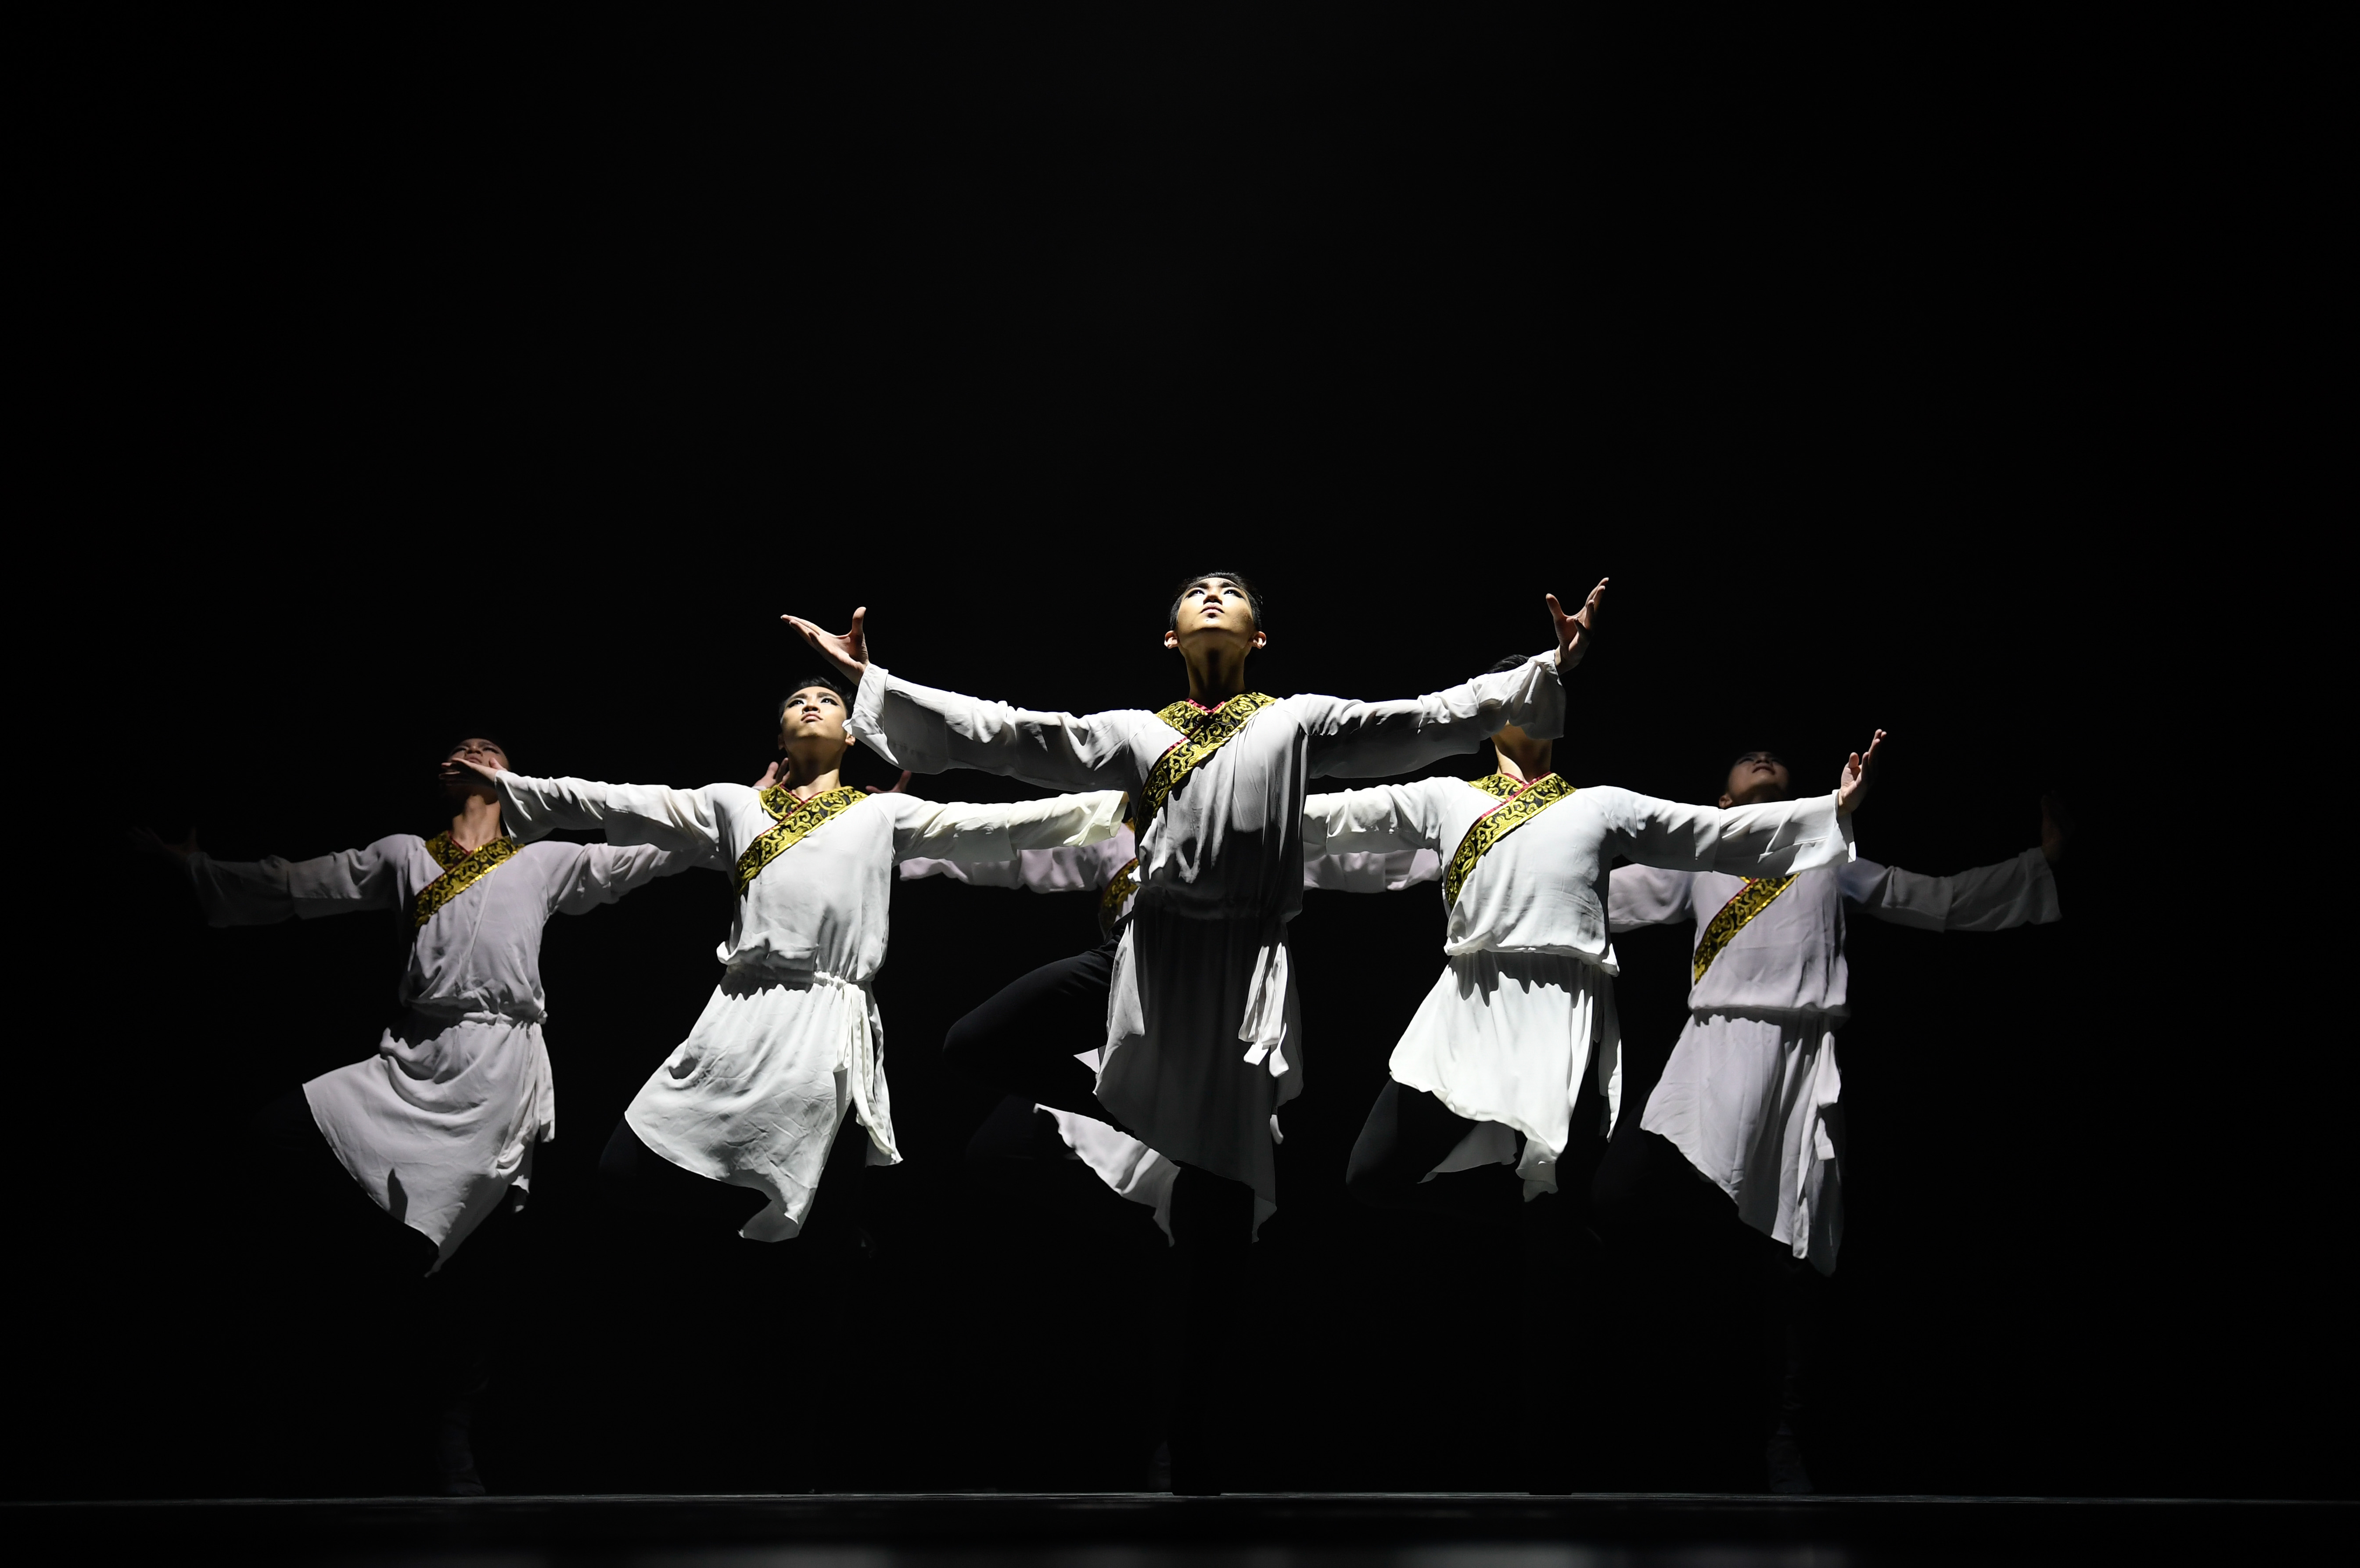 舞蹈队 Dancing Team-苏州工业园区领科高级中学